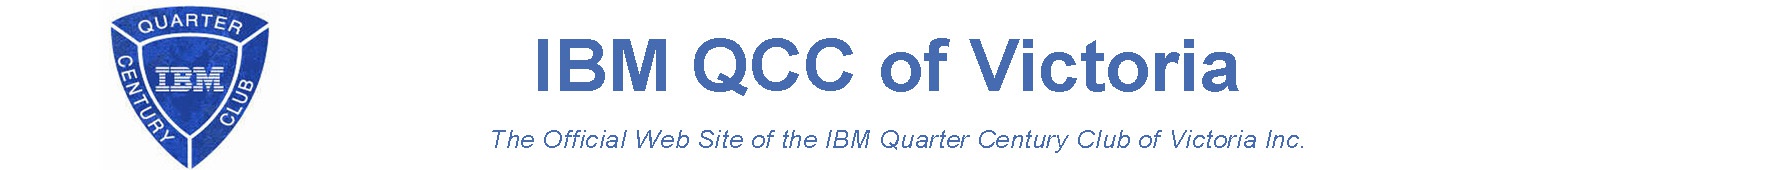 IBM Quarter Century Club of Victoria